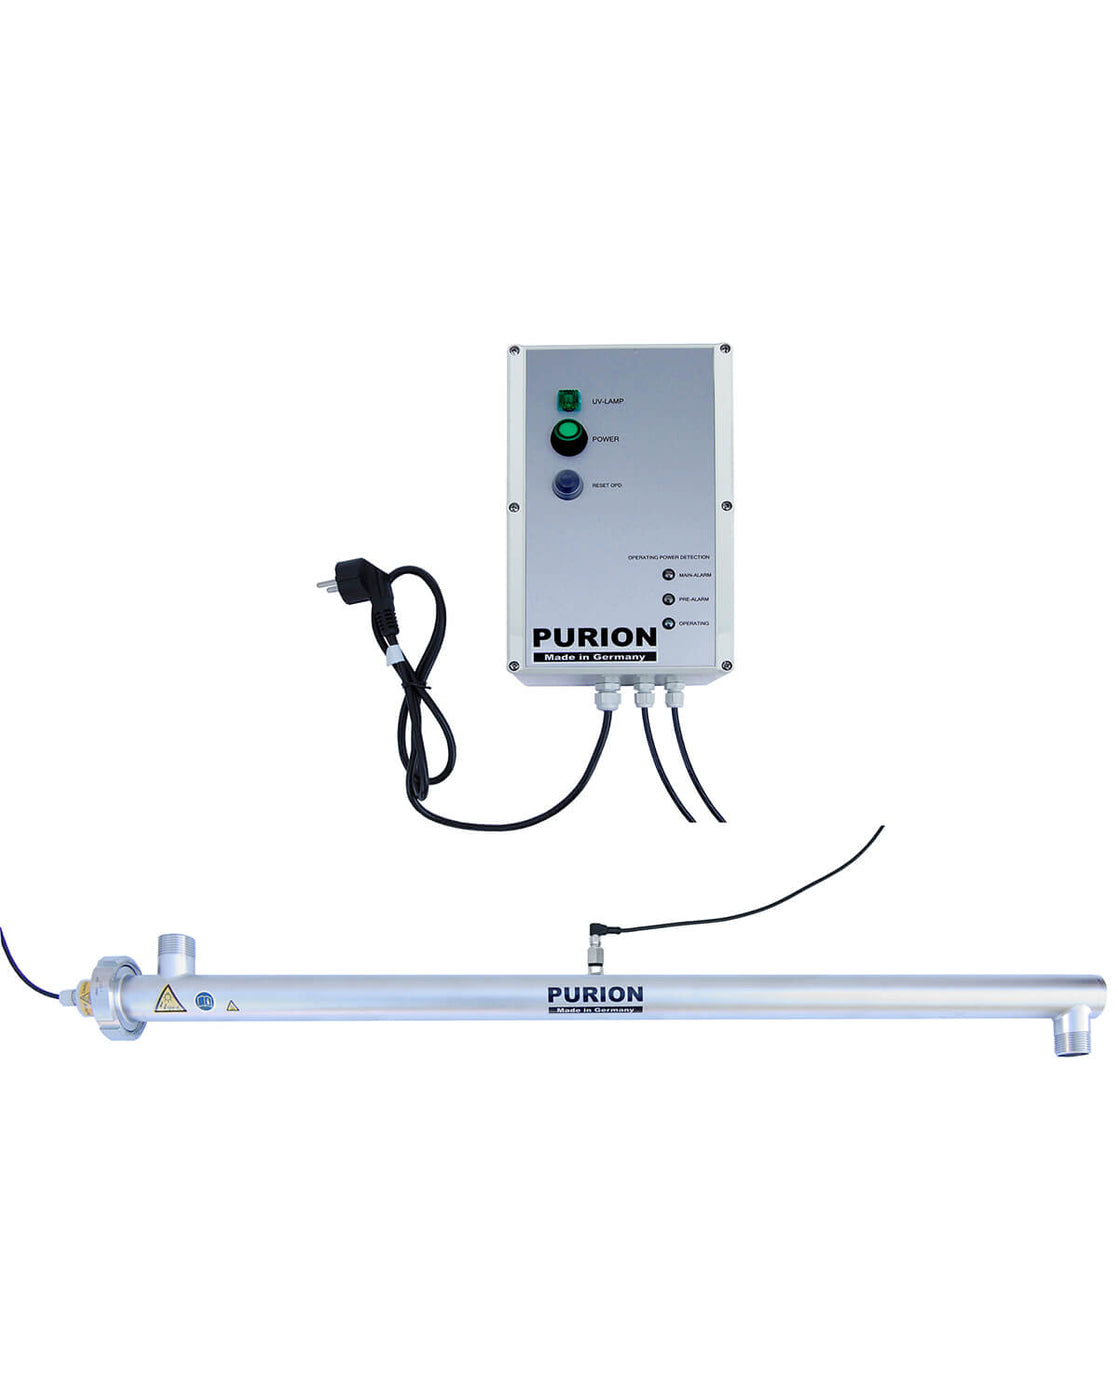 Ein kleines elektronisches Gerät mit angeschlossenem Licht, das speziell für die Wasseraufbereitung (Trinkwasser) entwickelt wurde und als PURION 2500 36 W 110 - 240 V AC OPD bezeichnet wird und von der PURION GmbH hergestellt wird.